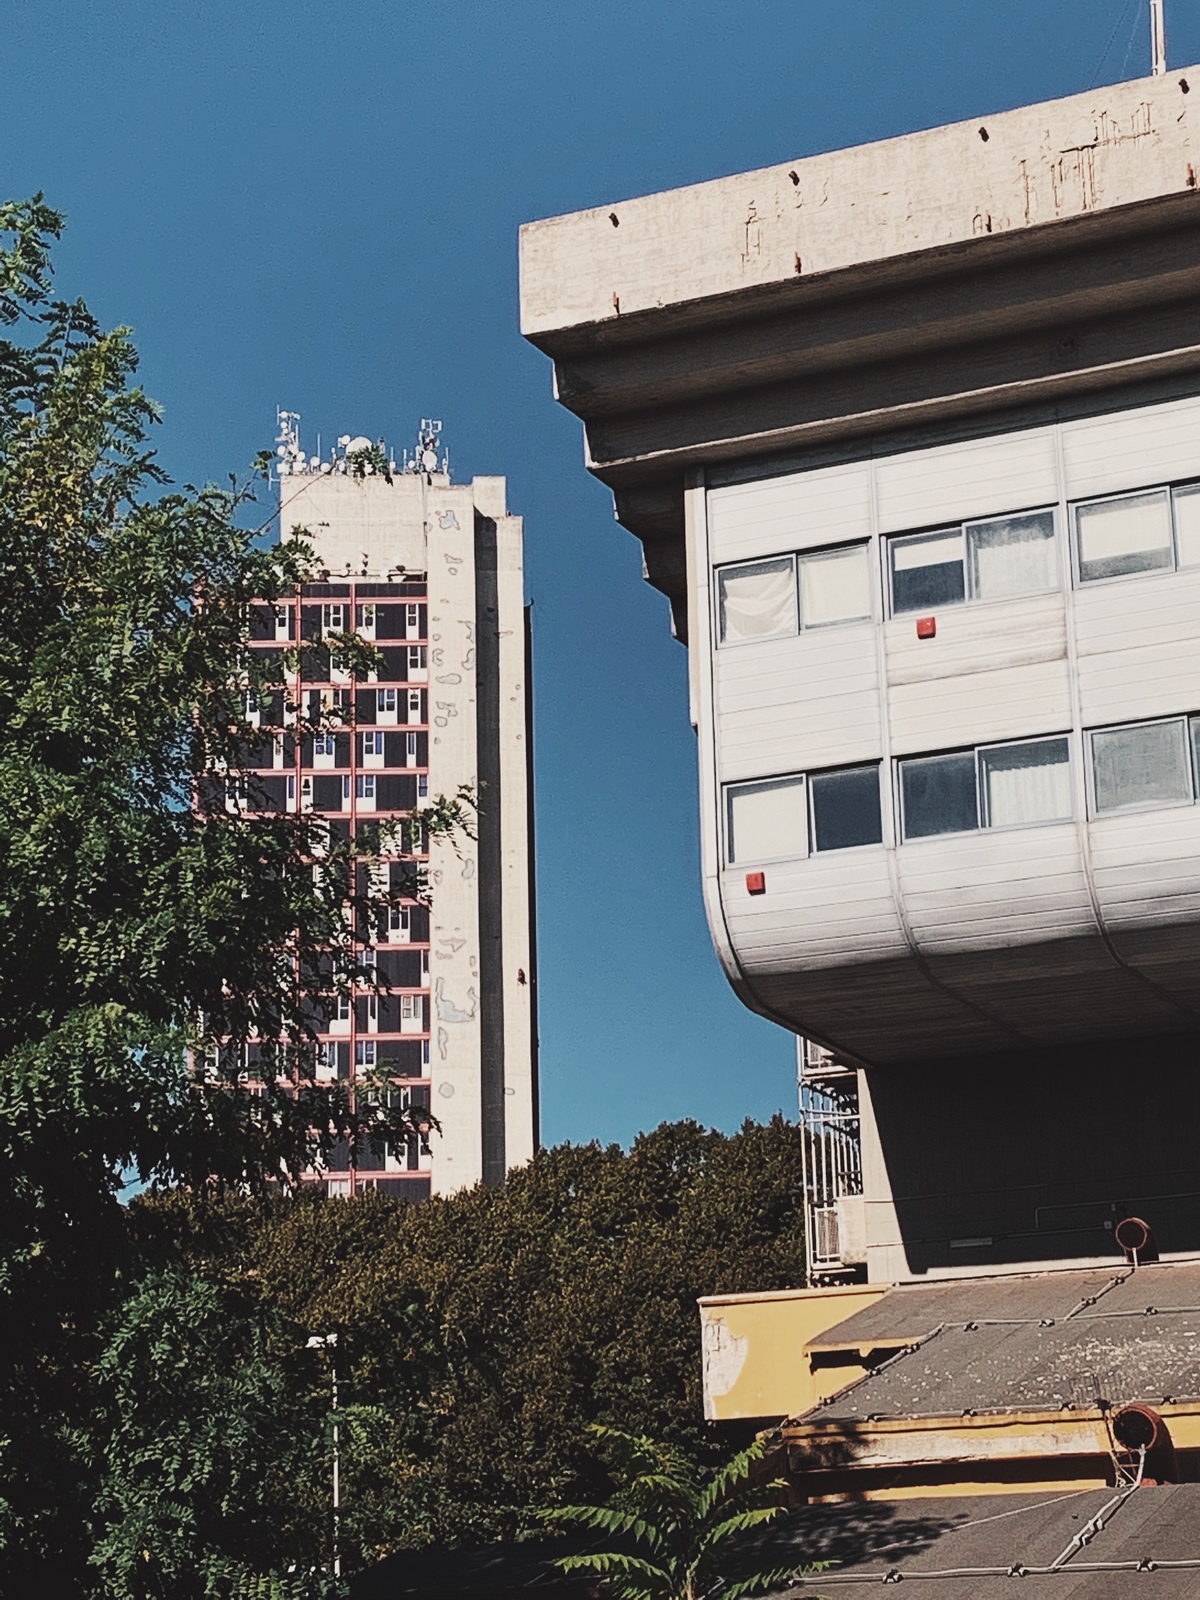 A spasso nel complesso del Secondo Policlinico di Napoli scoprendo l'architettura “Brutalista”